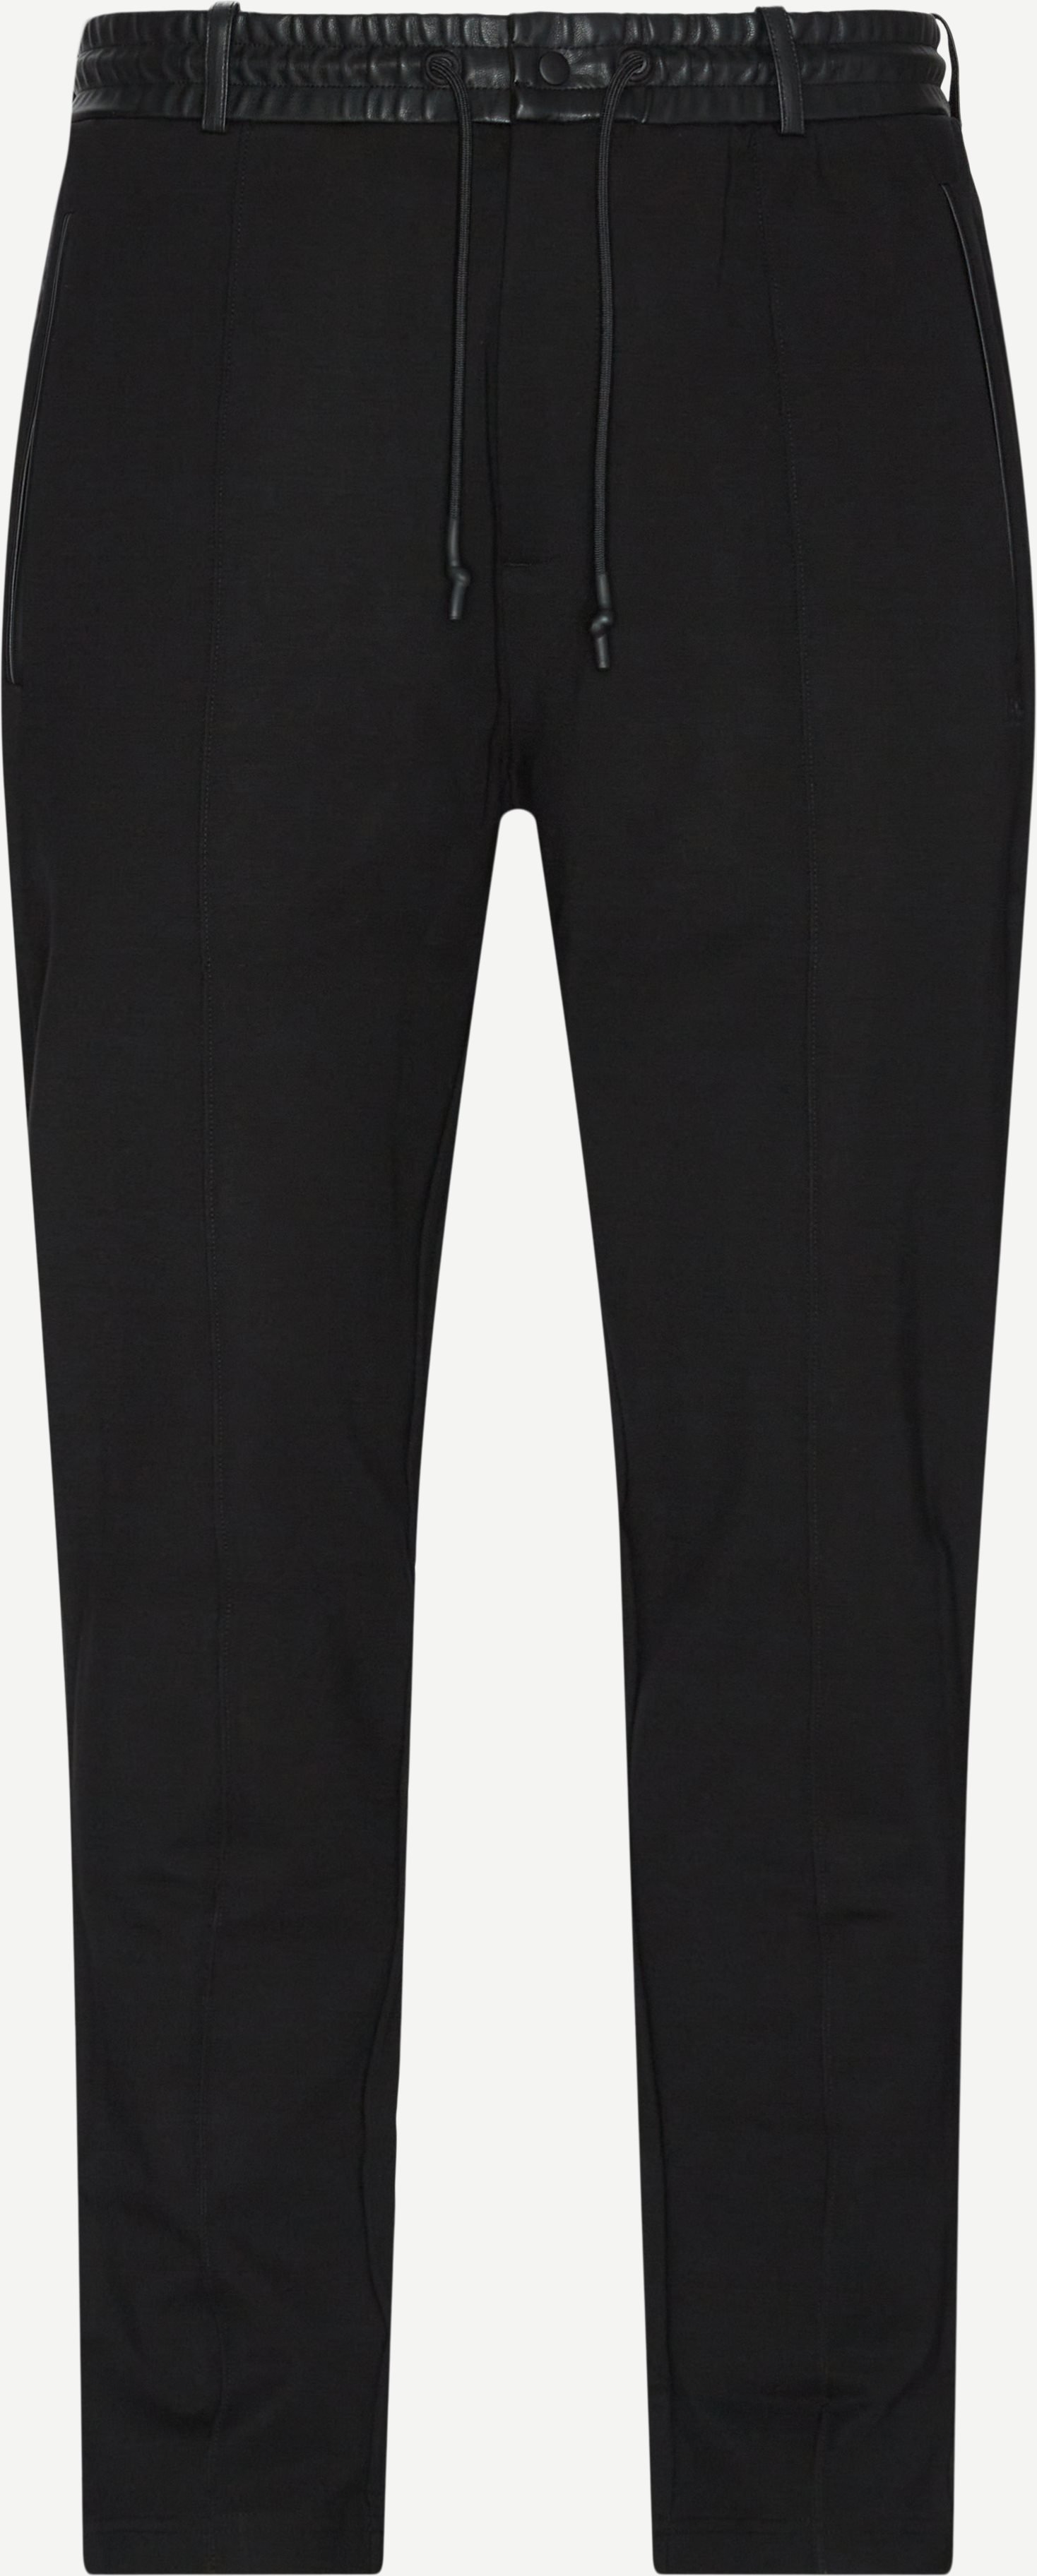 Helux Sweatpants - Bukser - Regular fit - Sort